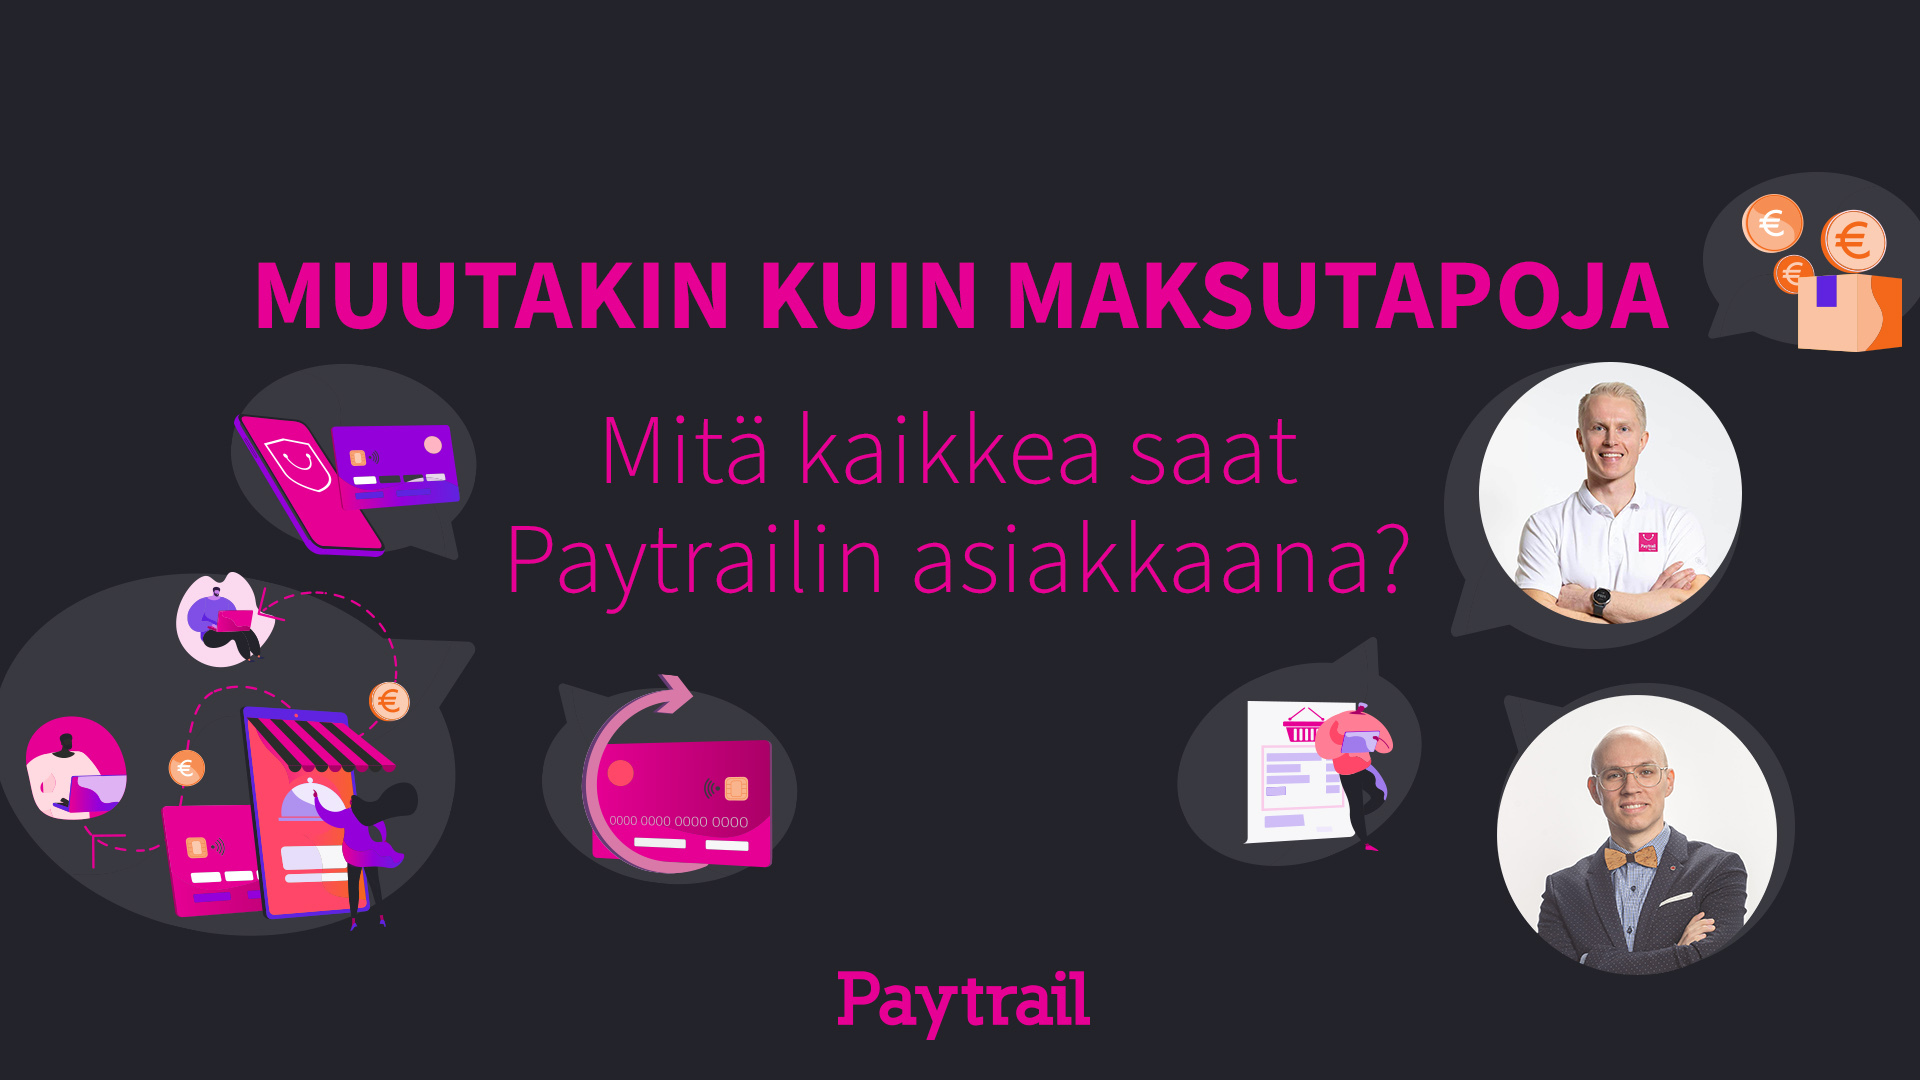 Tuotewebinaari-Paytrail